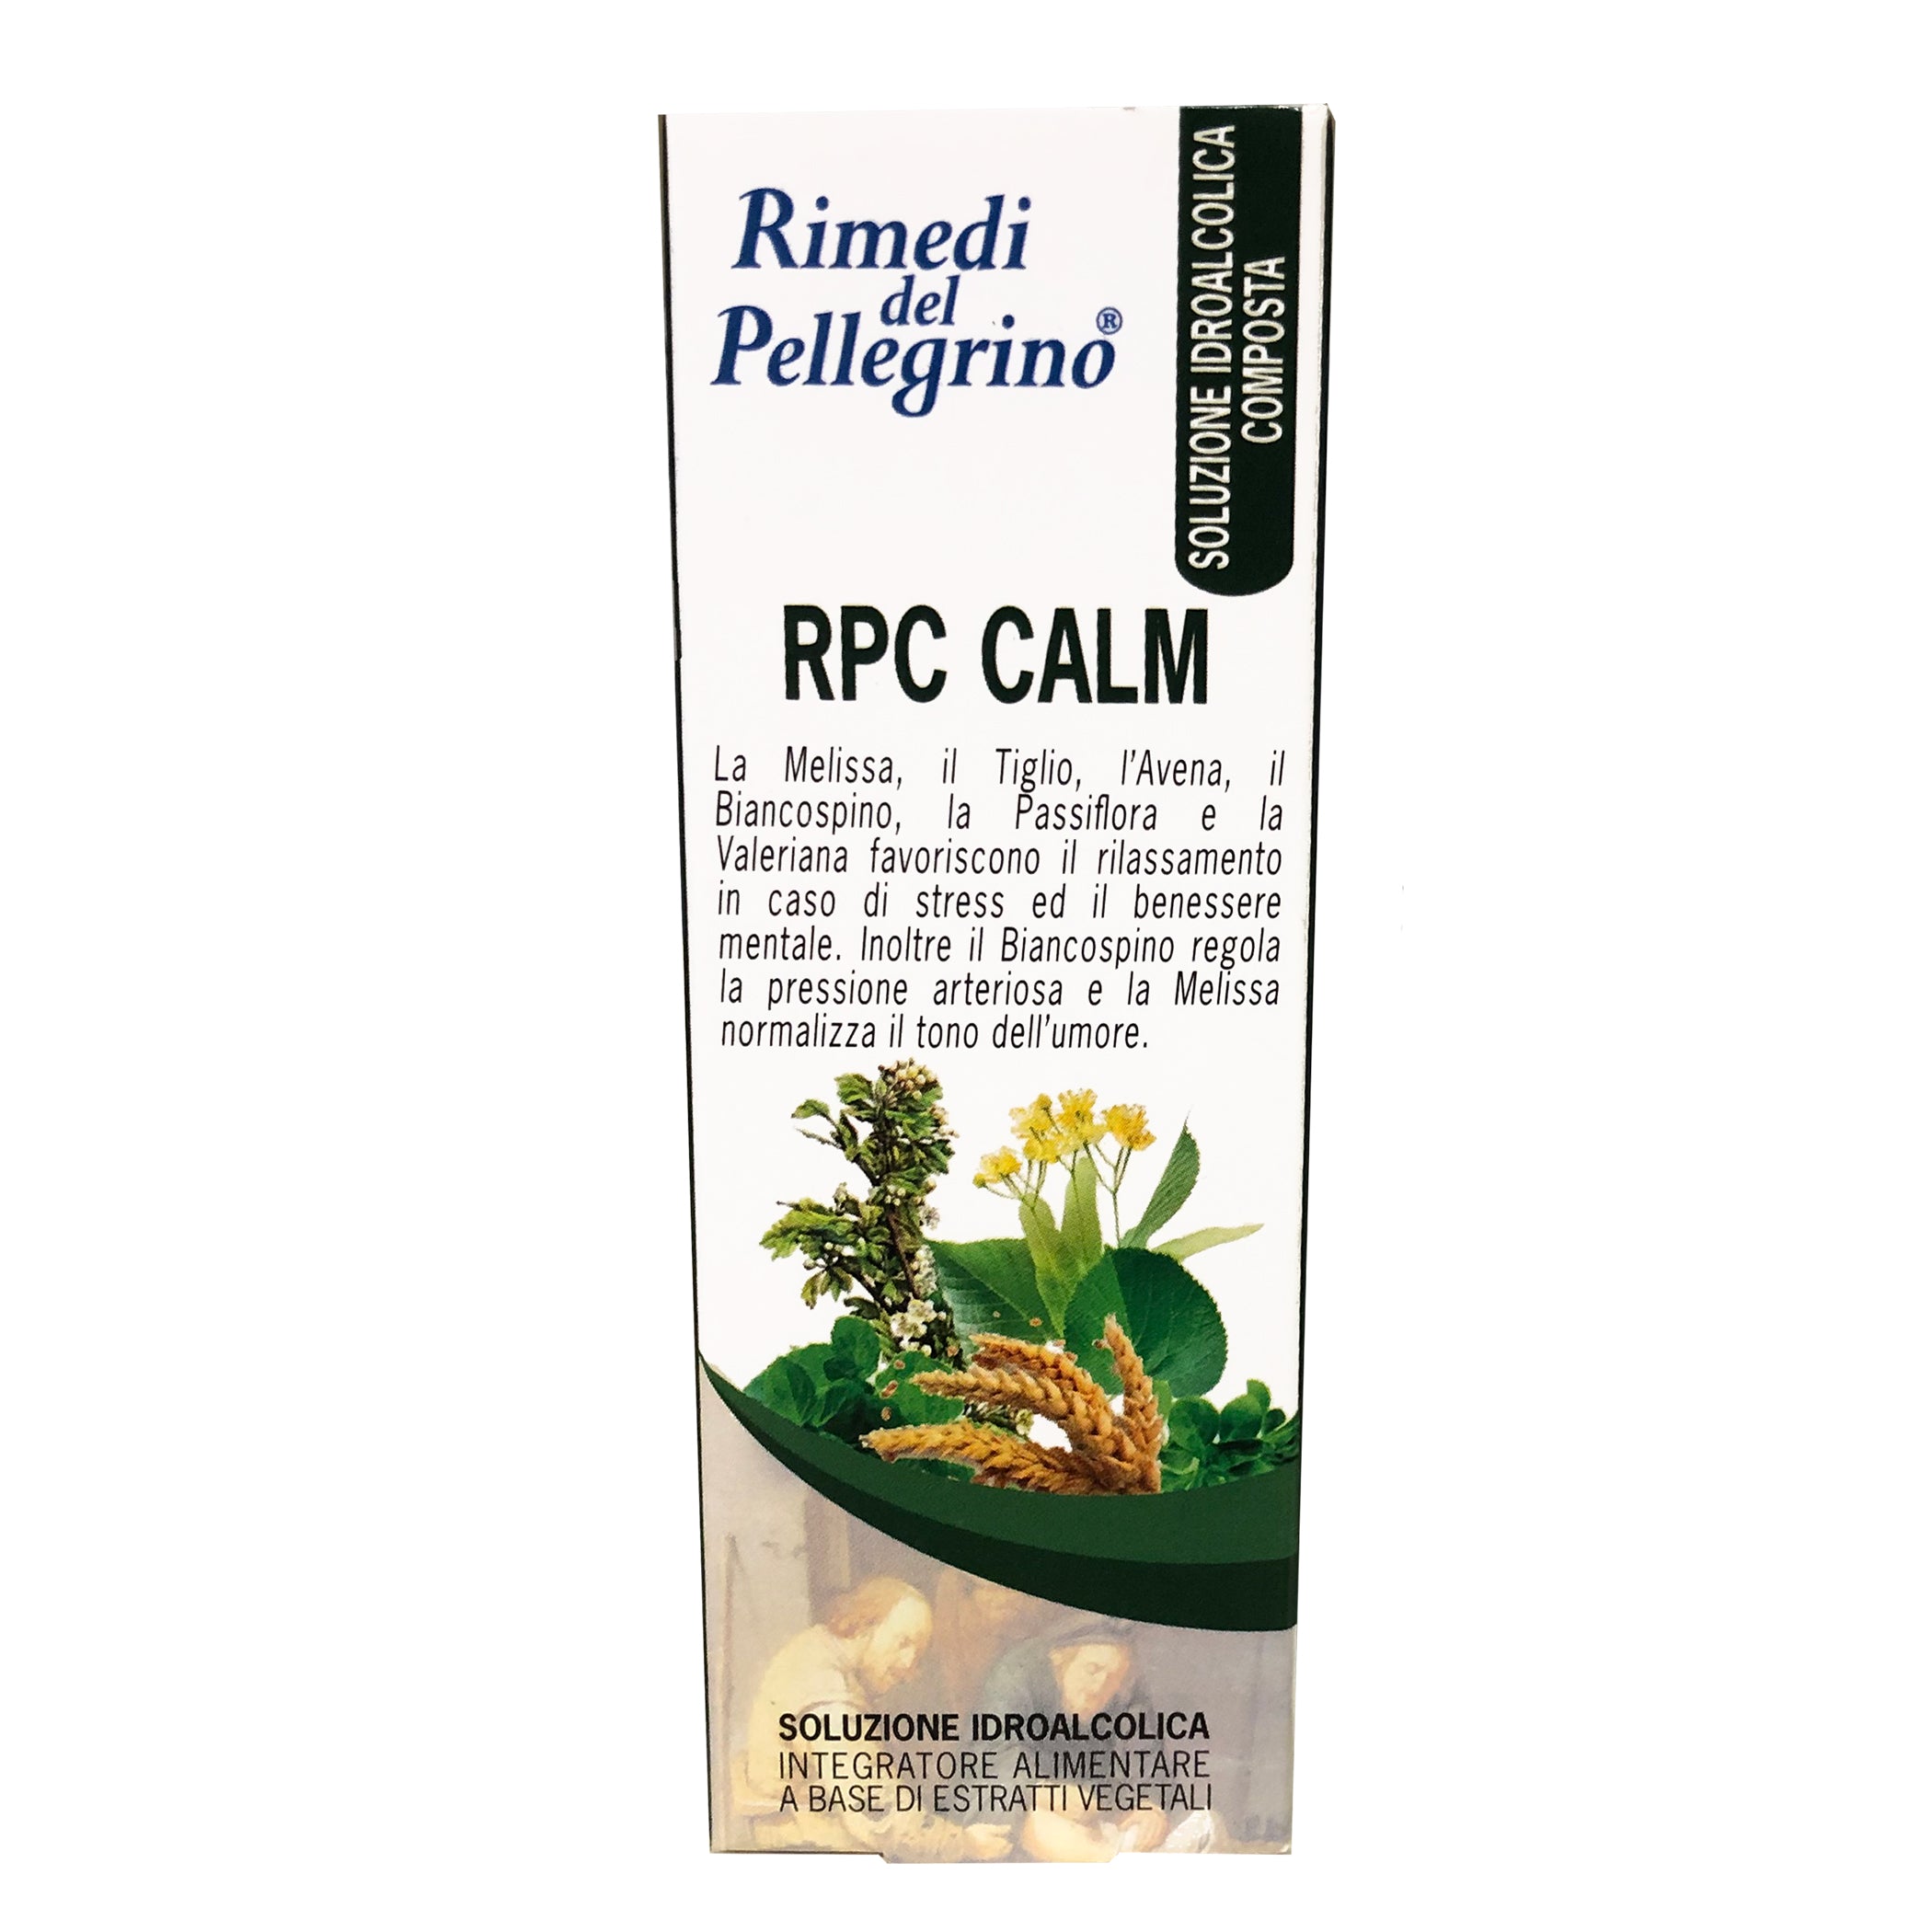 Integratore Alimentare RPC Calm - Rimedi del Pellegrino, Erboristeria Armonie Naturali